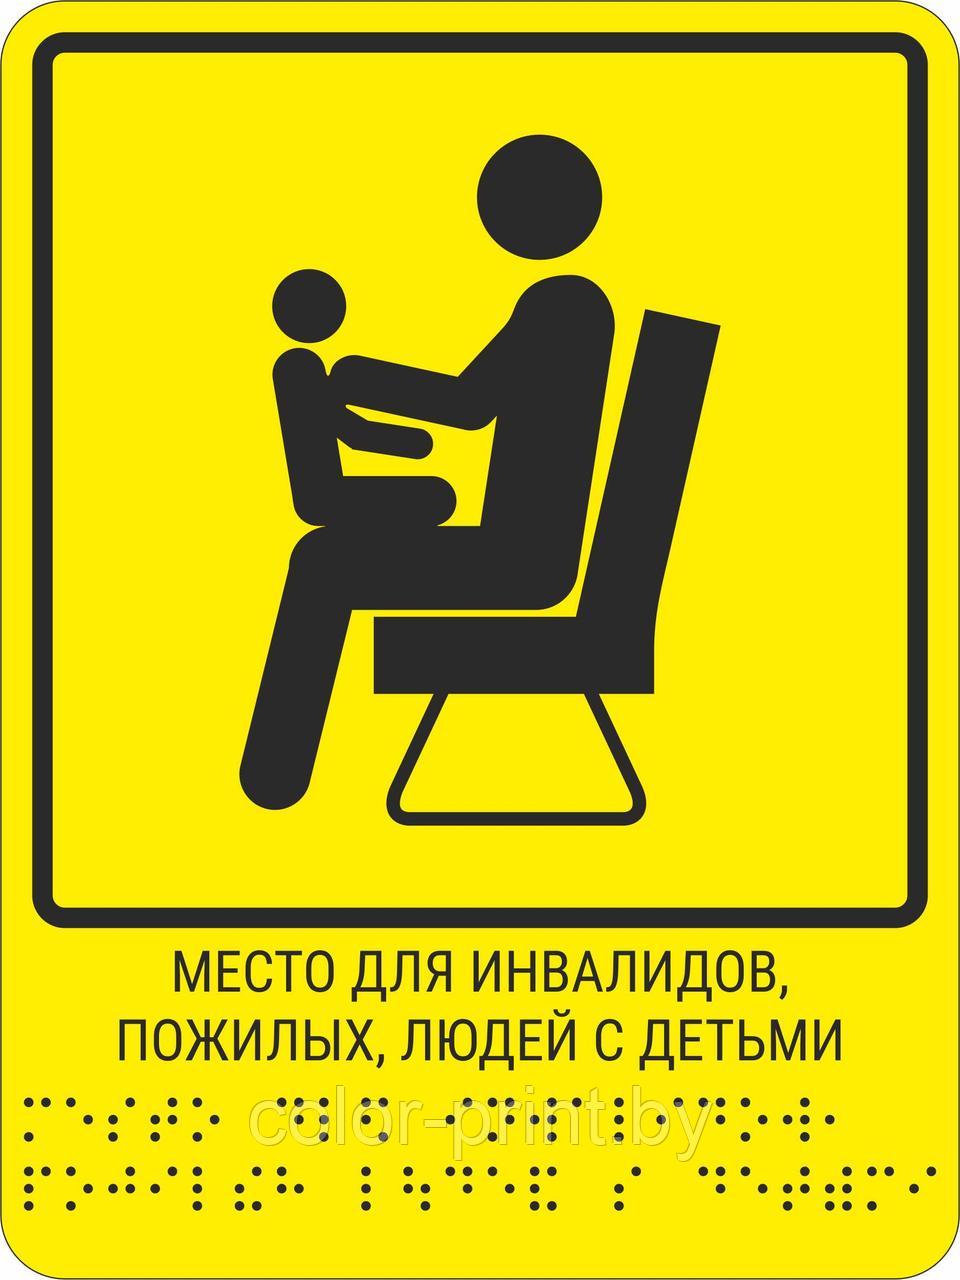 Тактильная пиктограмма с шрифтом Брайля  "Место для инвалидов, пожилых, людей с детьми" 200*250, ПВХ